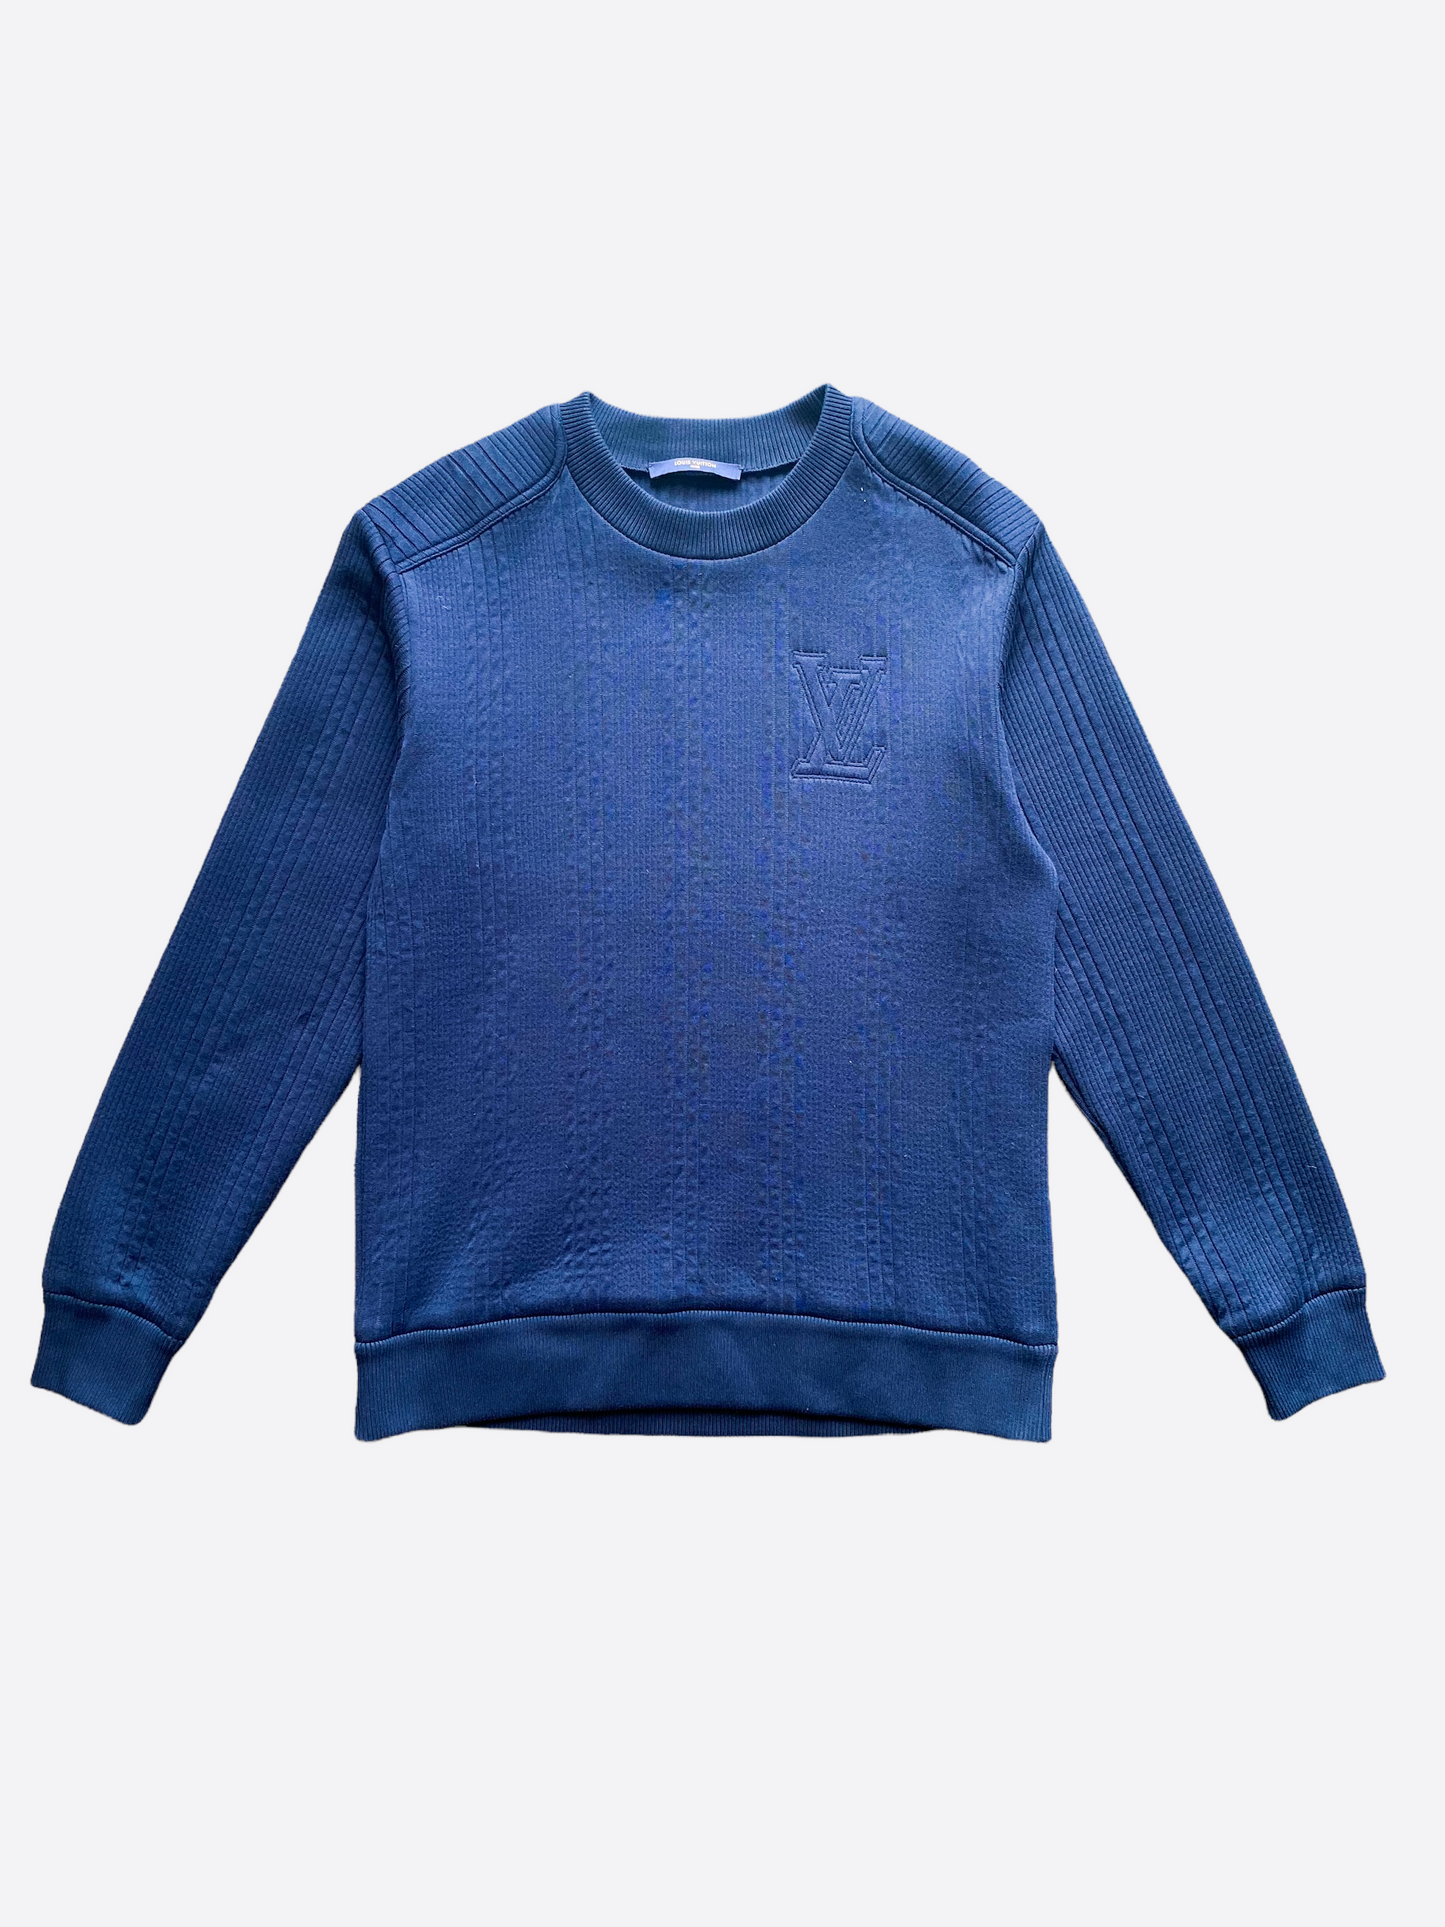 Sweatshirt Louis Vuitton Navy size S International in Cotton - 29843954